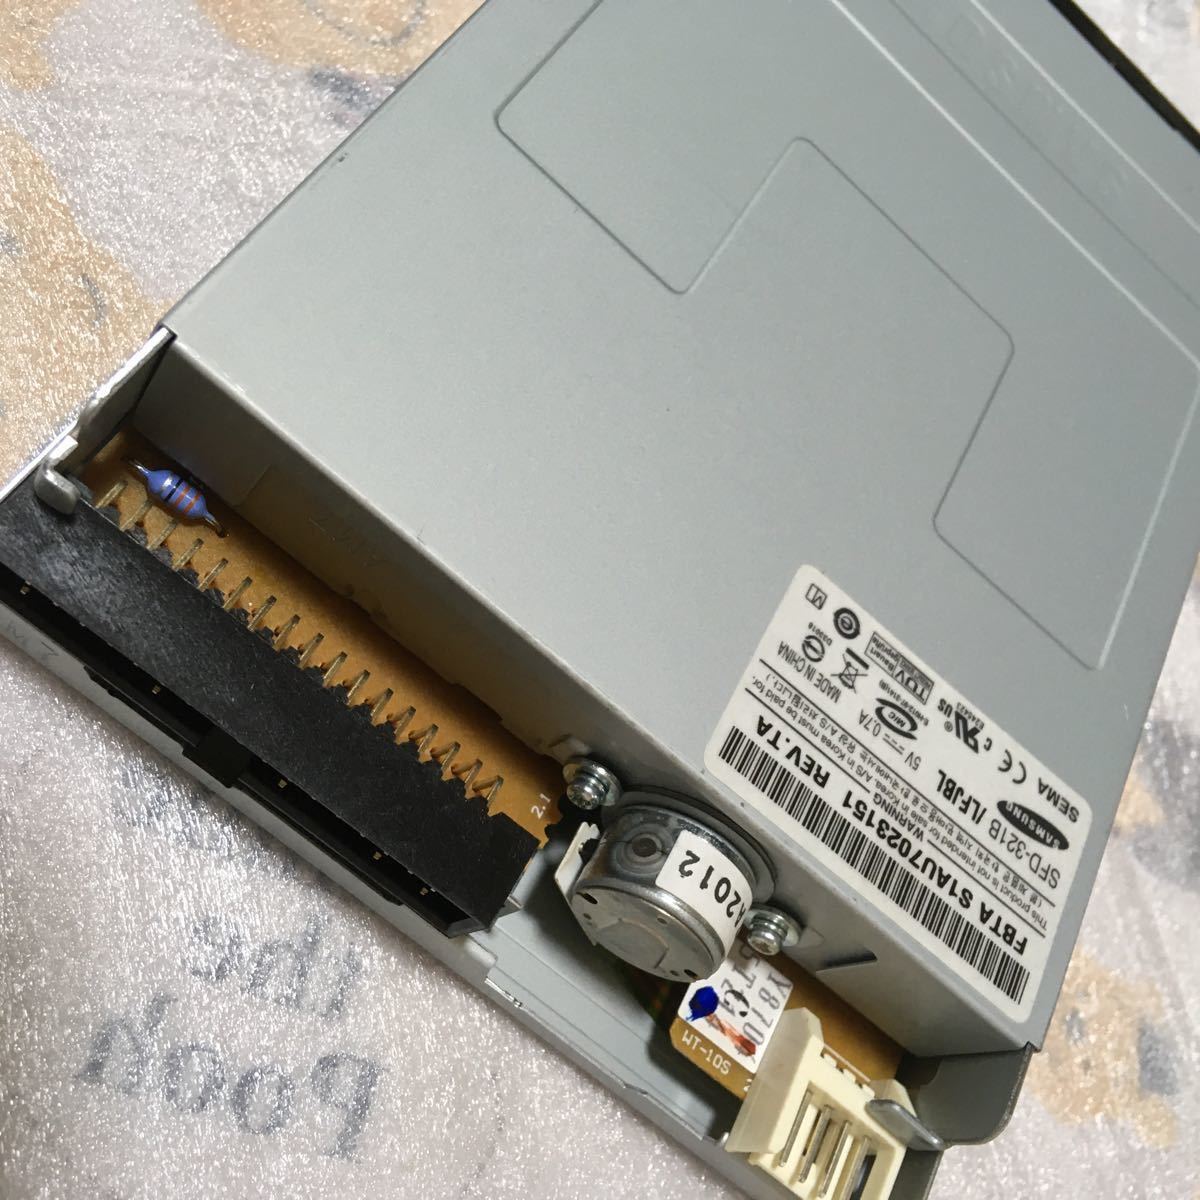 フロッピーディスクドライブ・SAMSUNG サムスン「SFD-321B」3.5インチ内蔵型